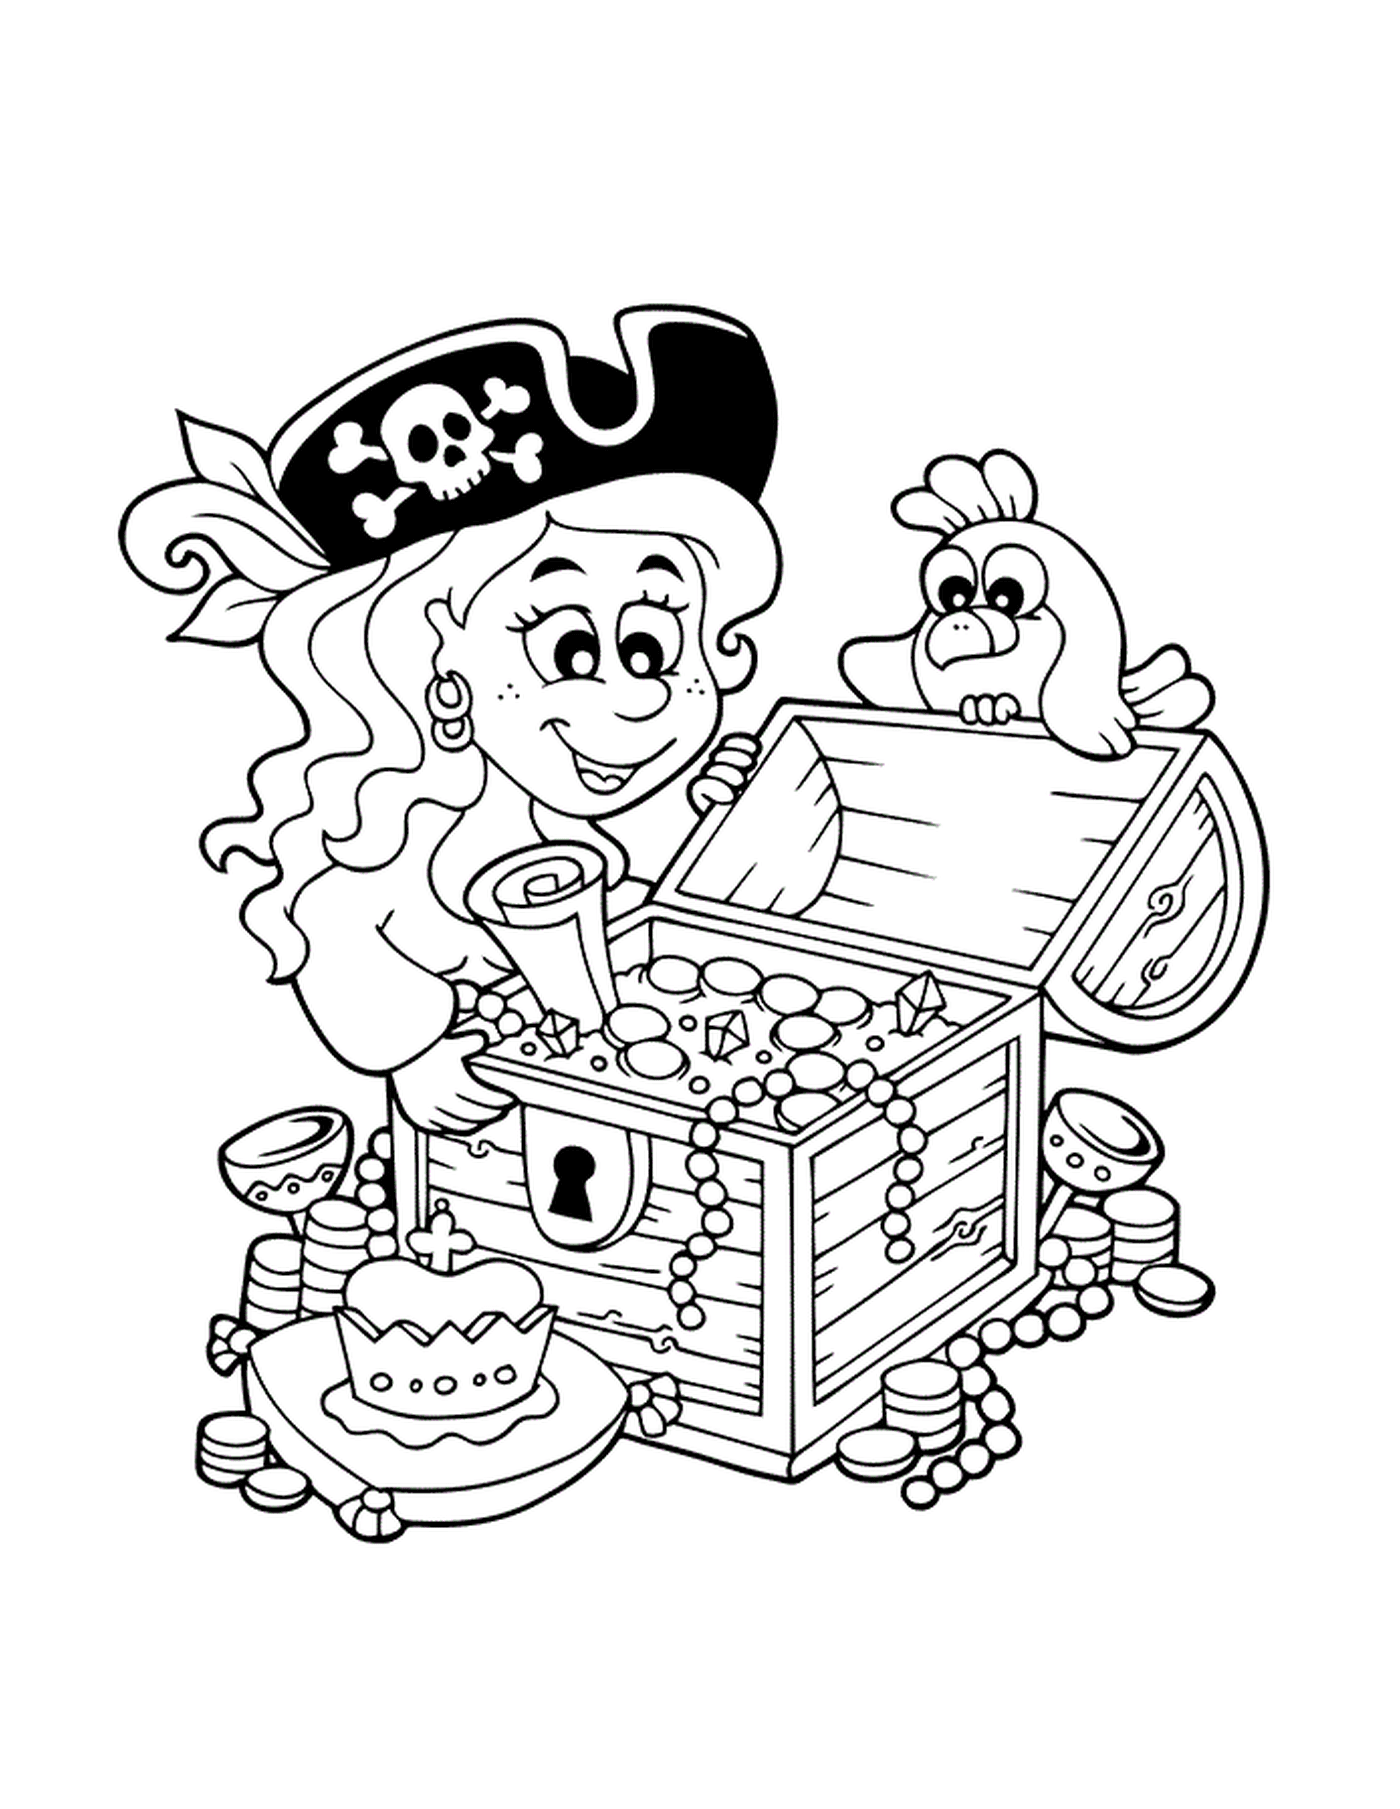  Chica pirata descubre tesoro 